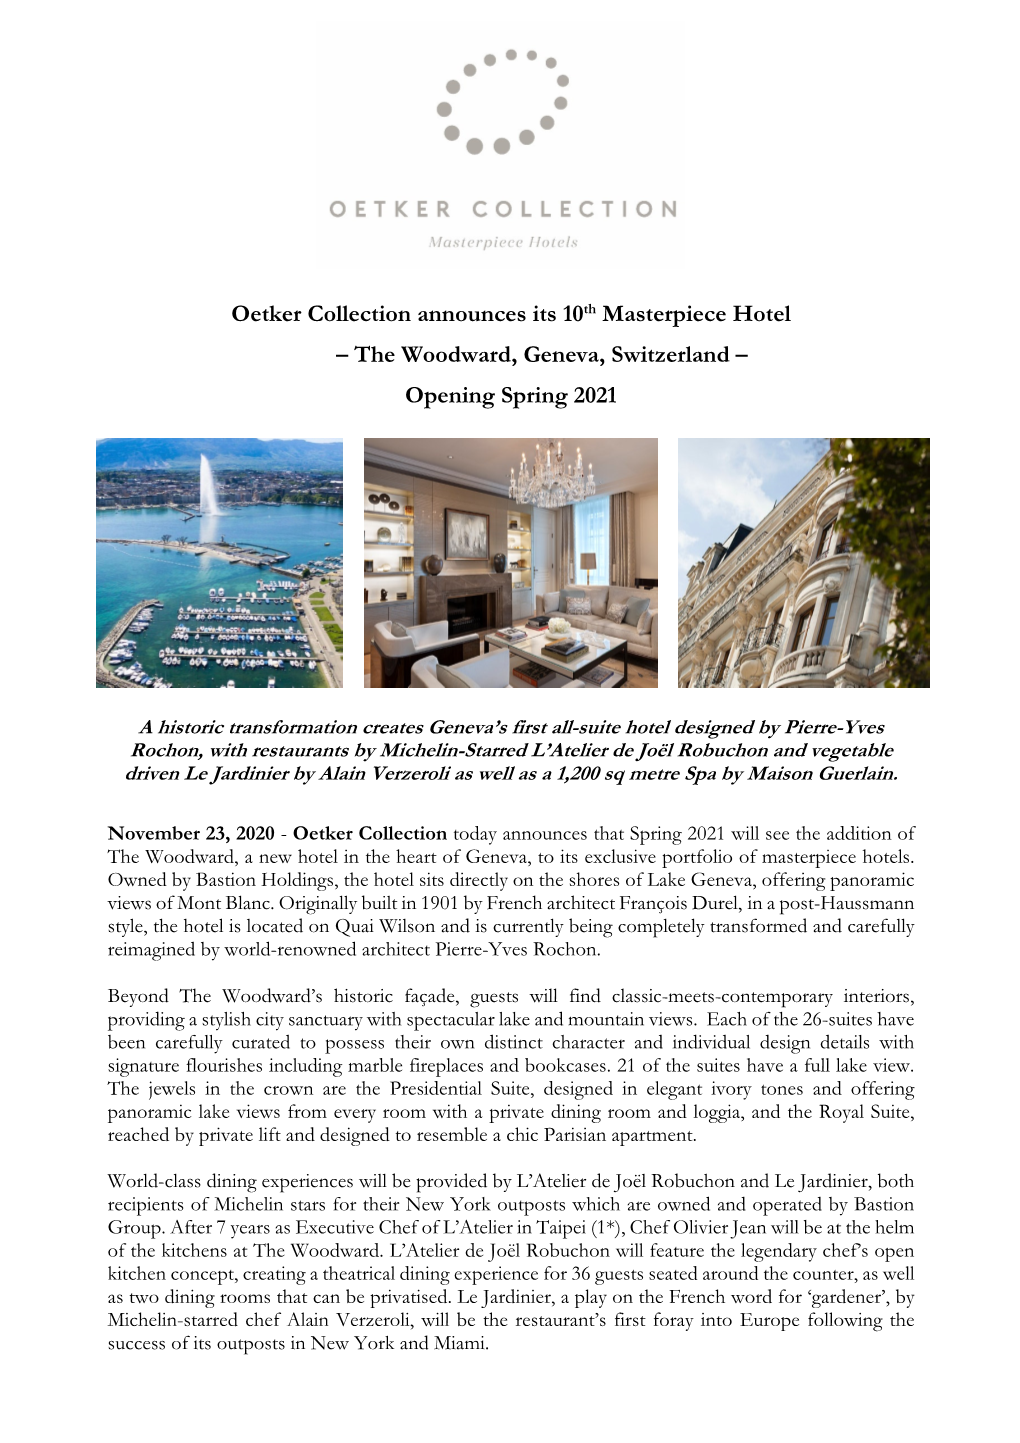 The Woodward, Geneva, Switzerland – Opening Spring 2021